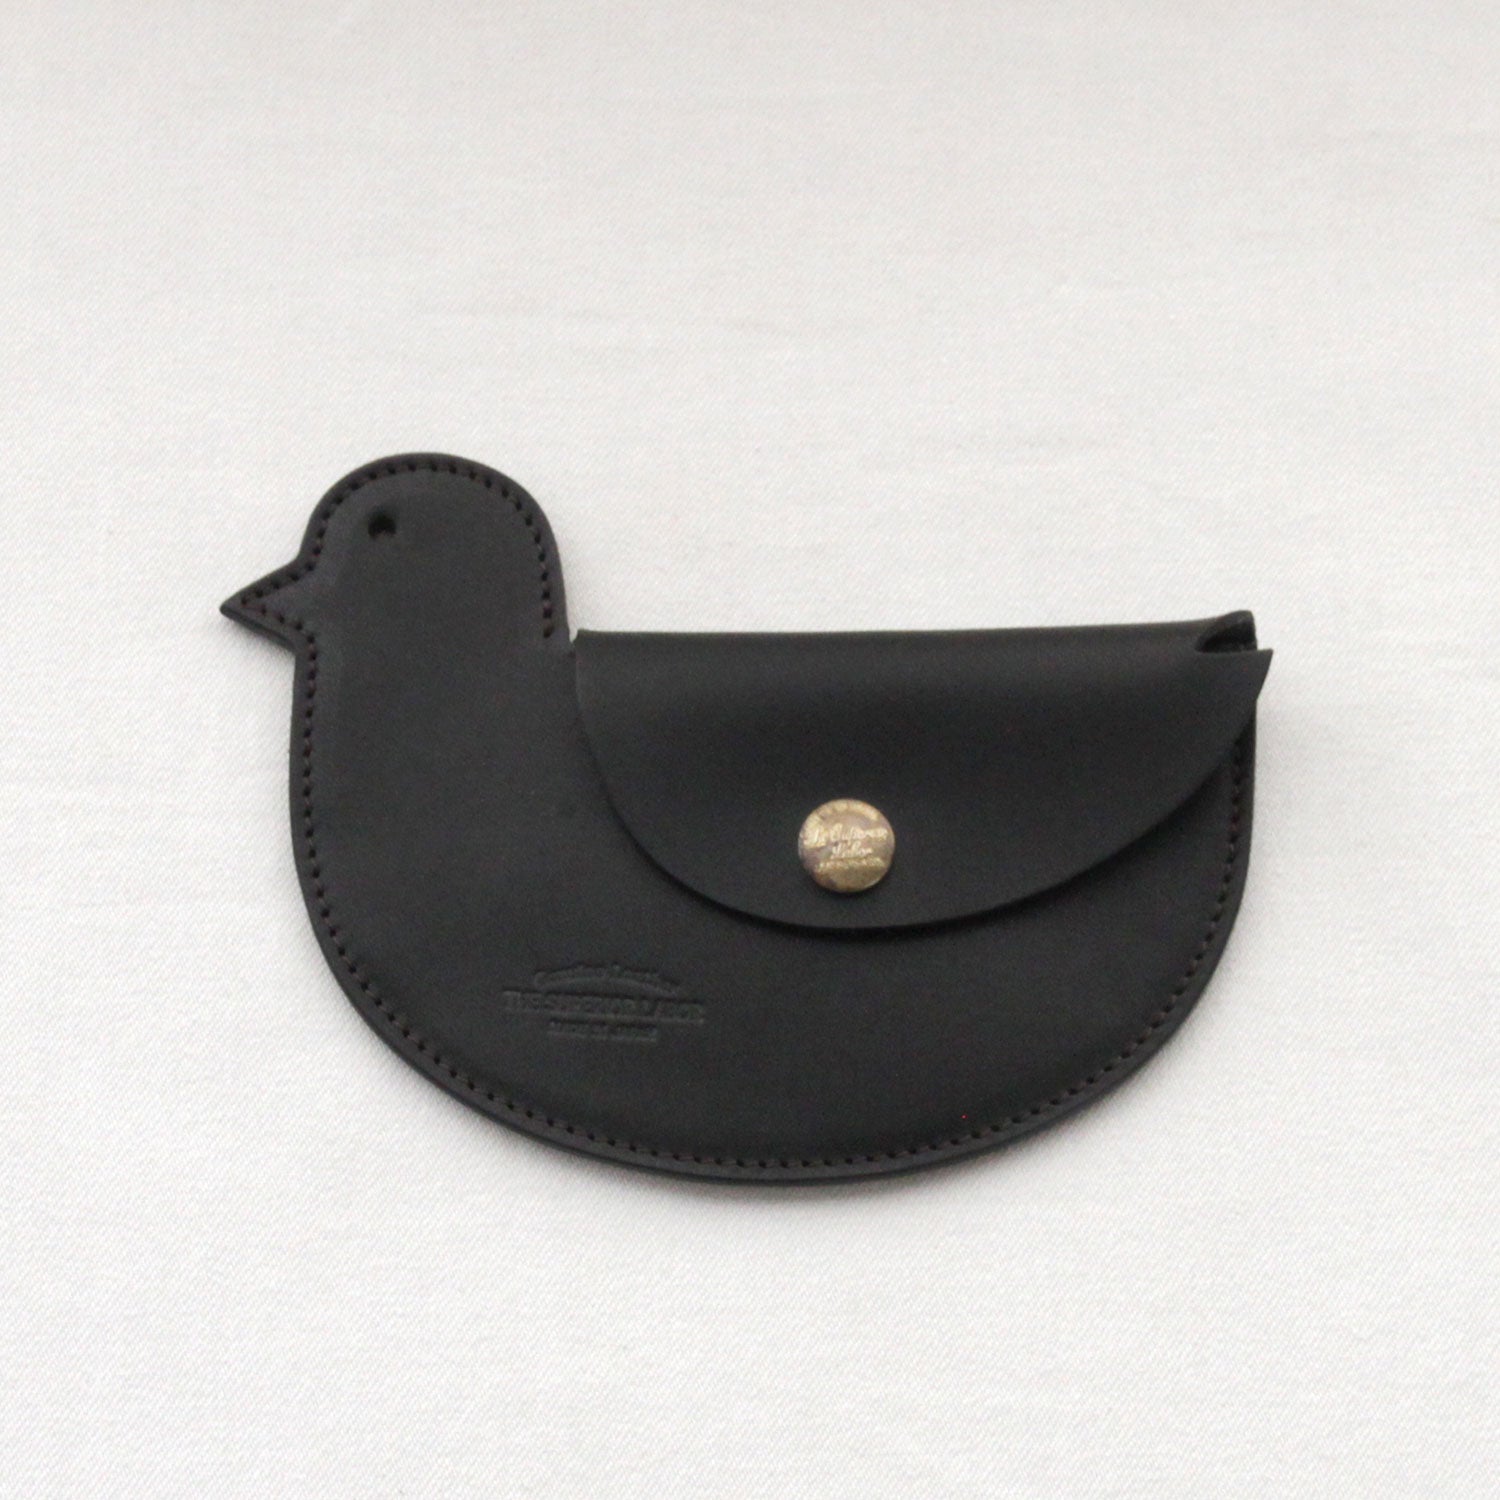 SL0133 bird purse